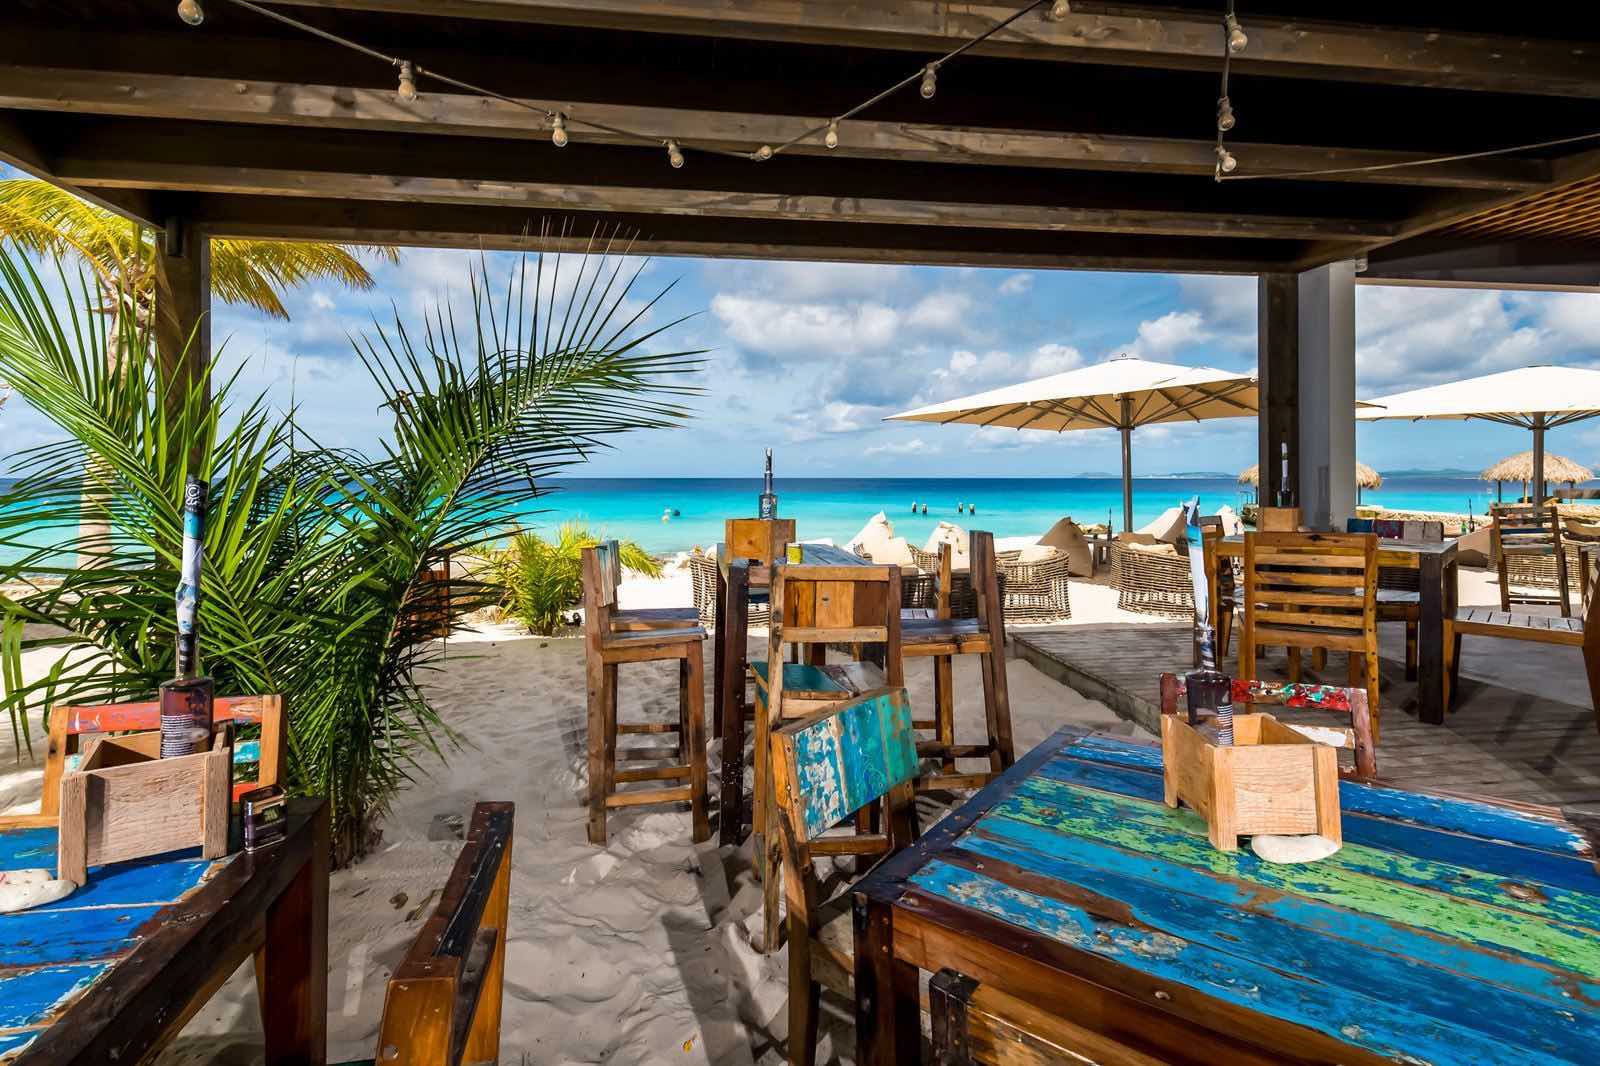 Het restaurant Club Tropicana, onderdeel van brassboer op Bonaire